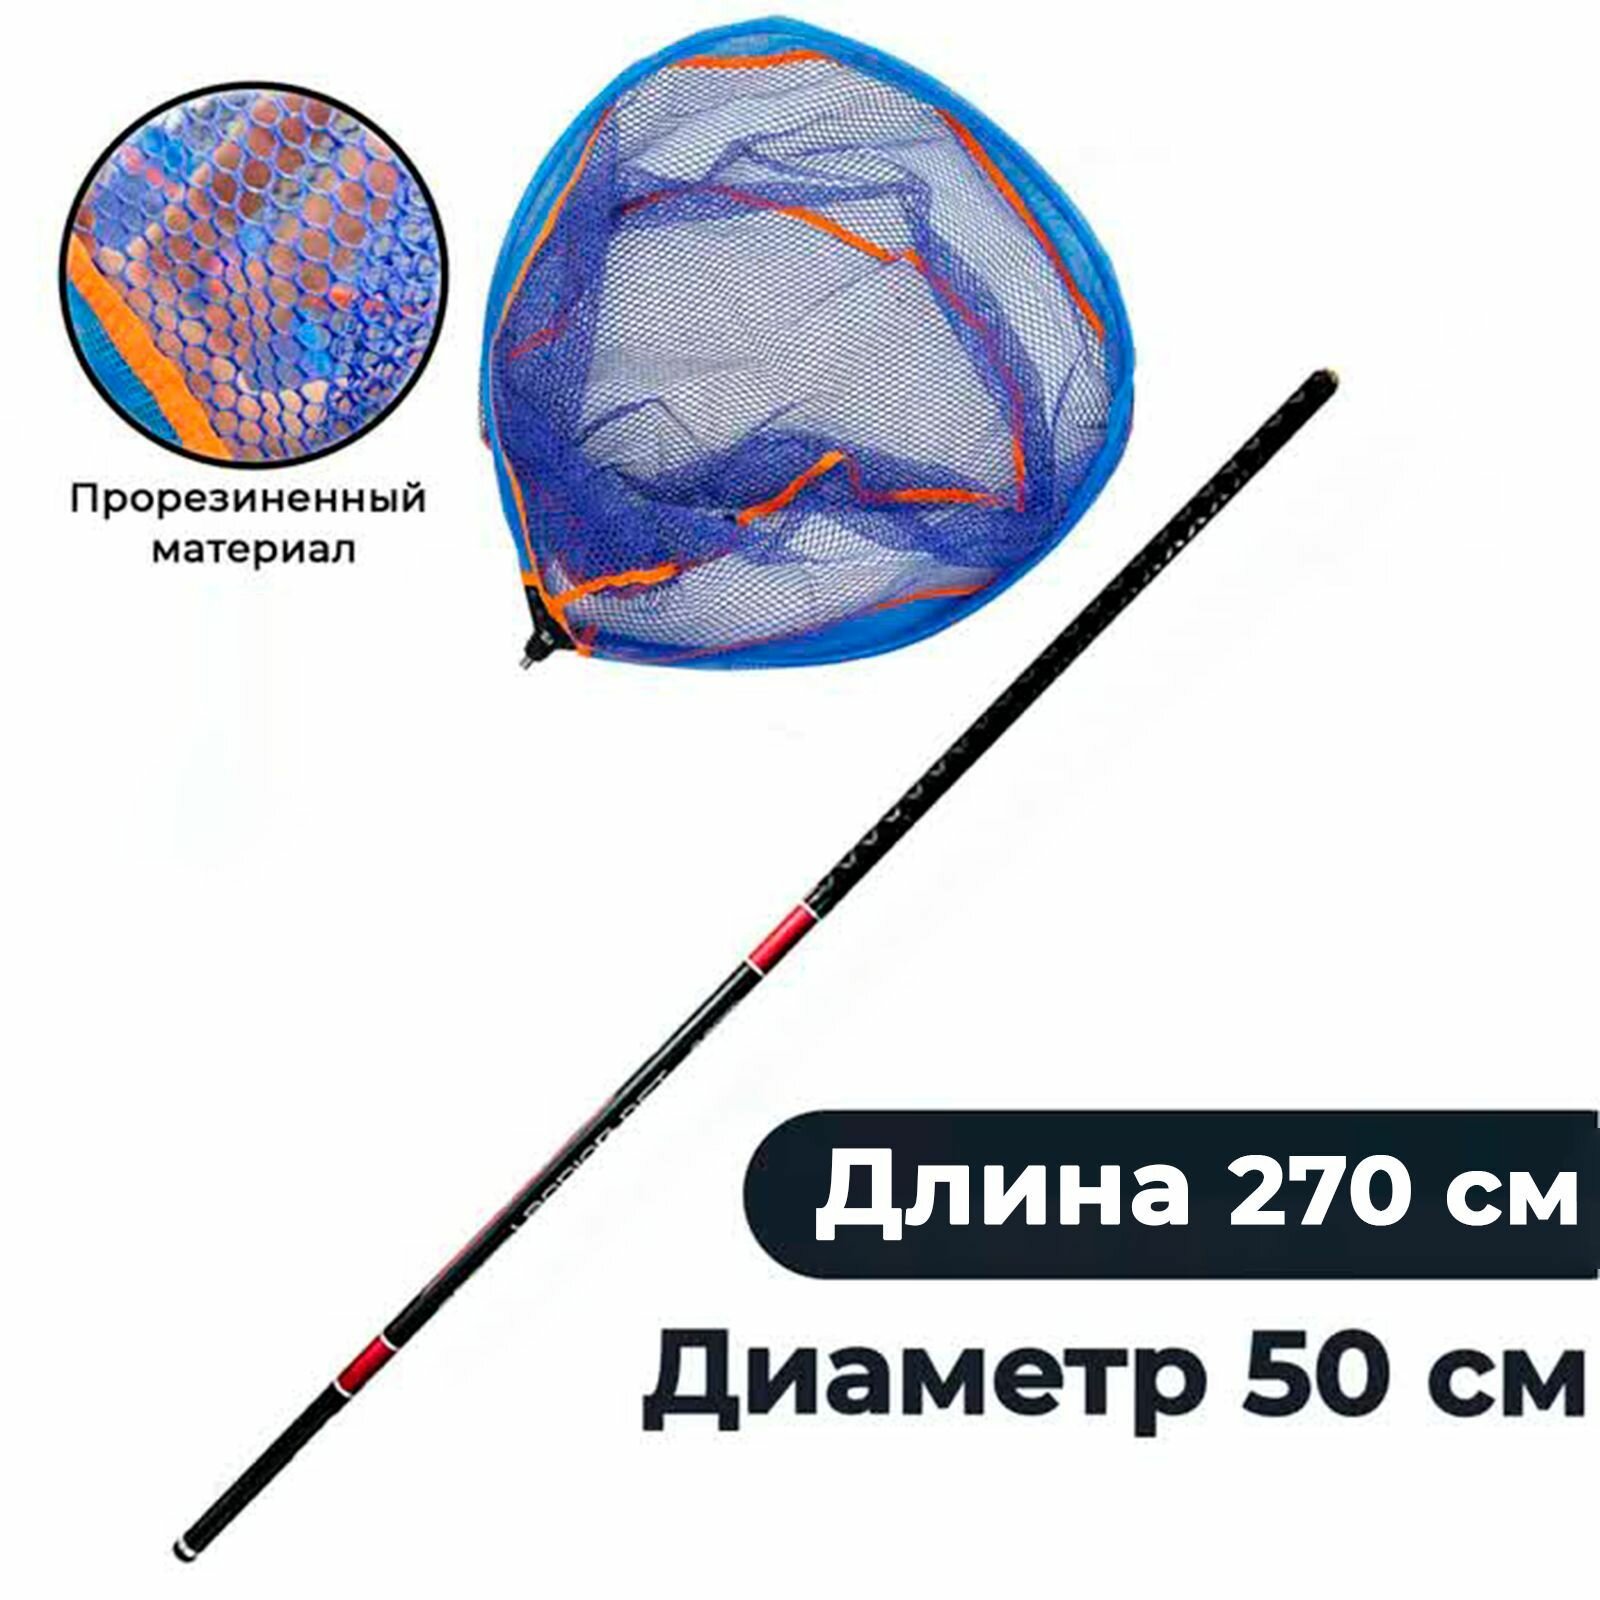 Подсачек прорезиненная сетка рыболовный 50 на 55 см с карбоновой ручкой до 2.7 м.